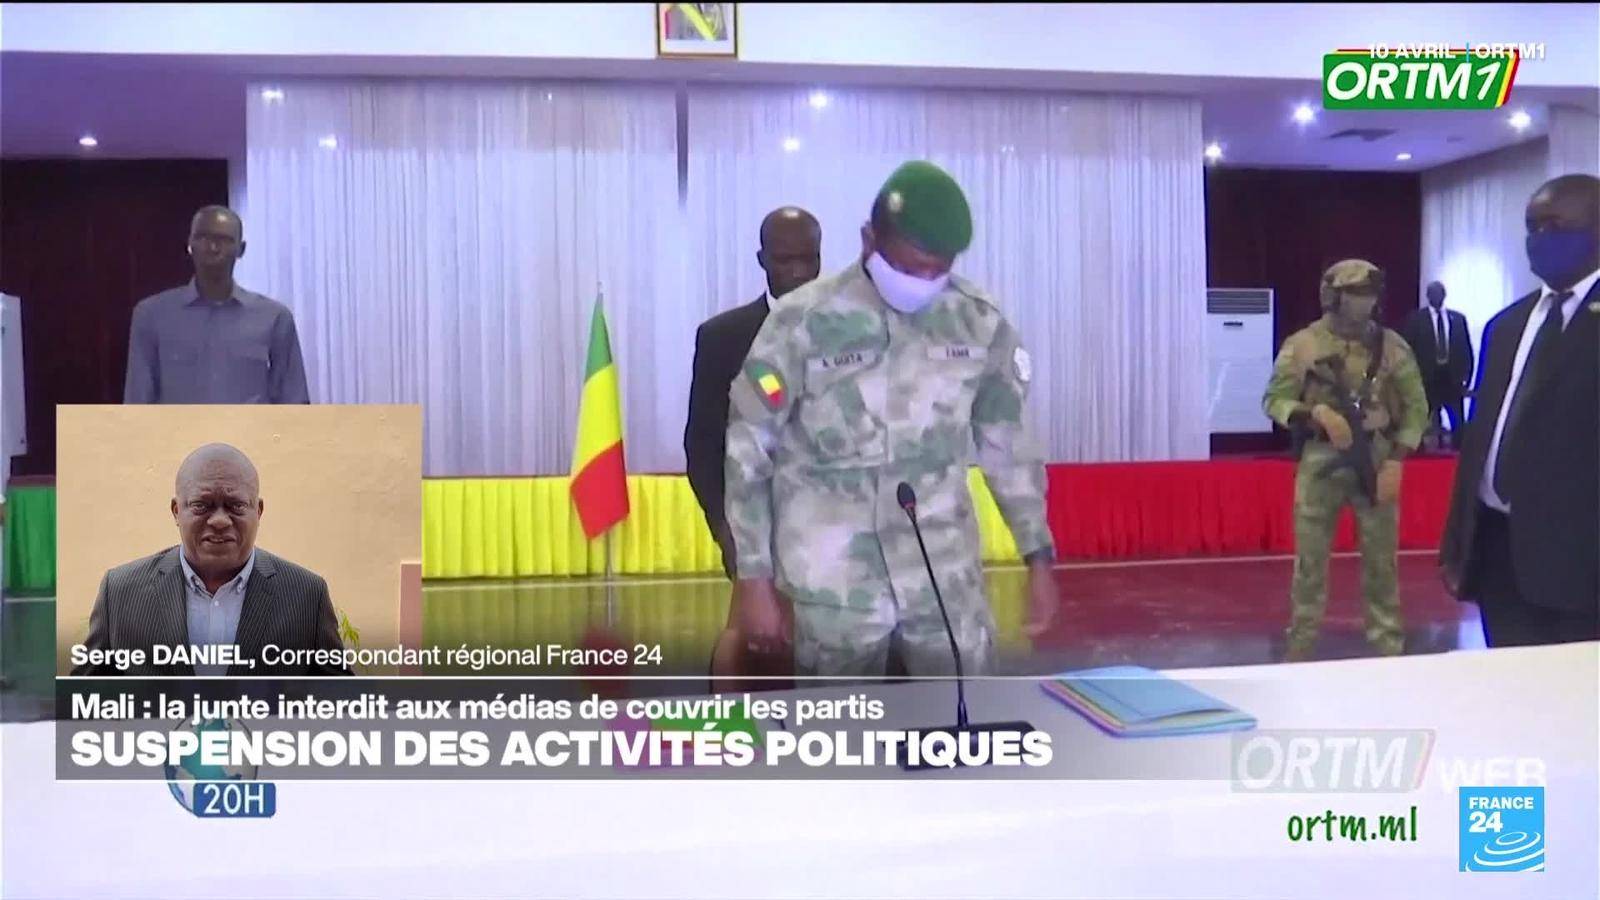 Mali : la junte interdit aux médias de couvrir les partis politiques